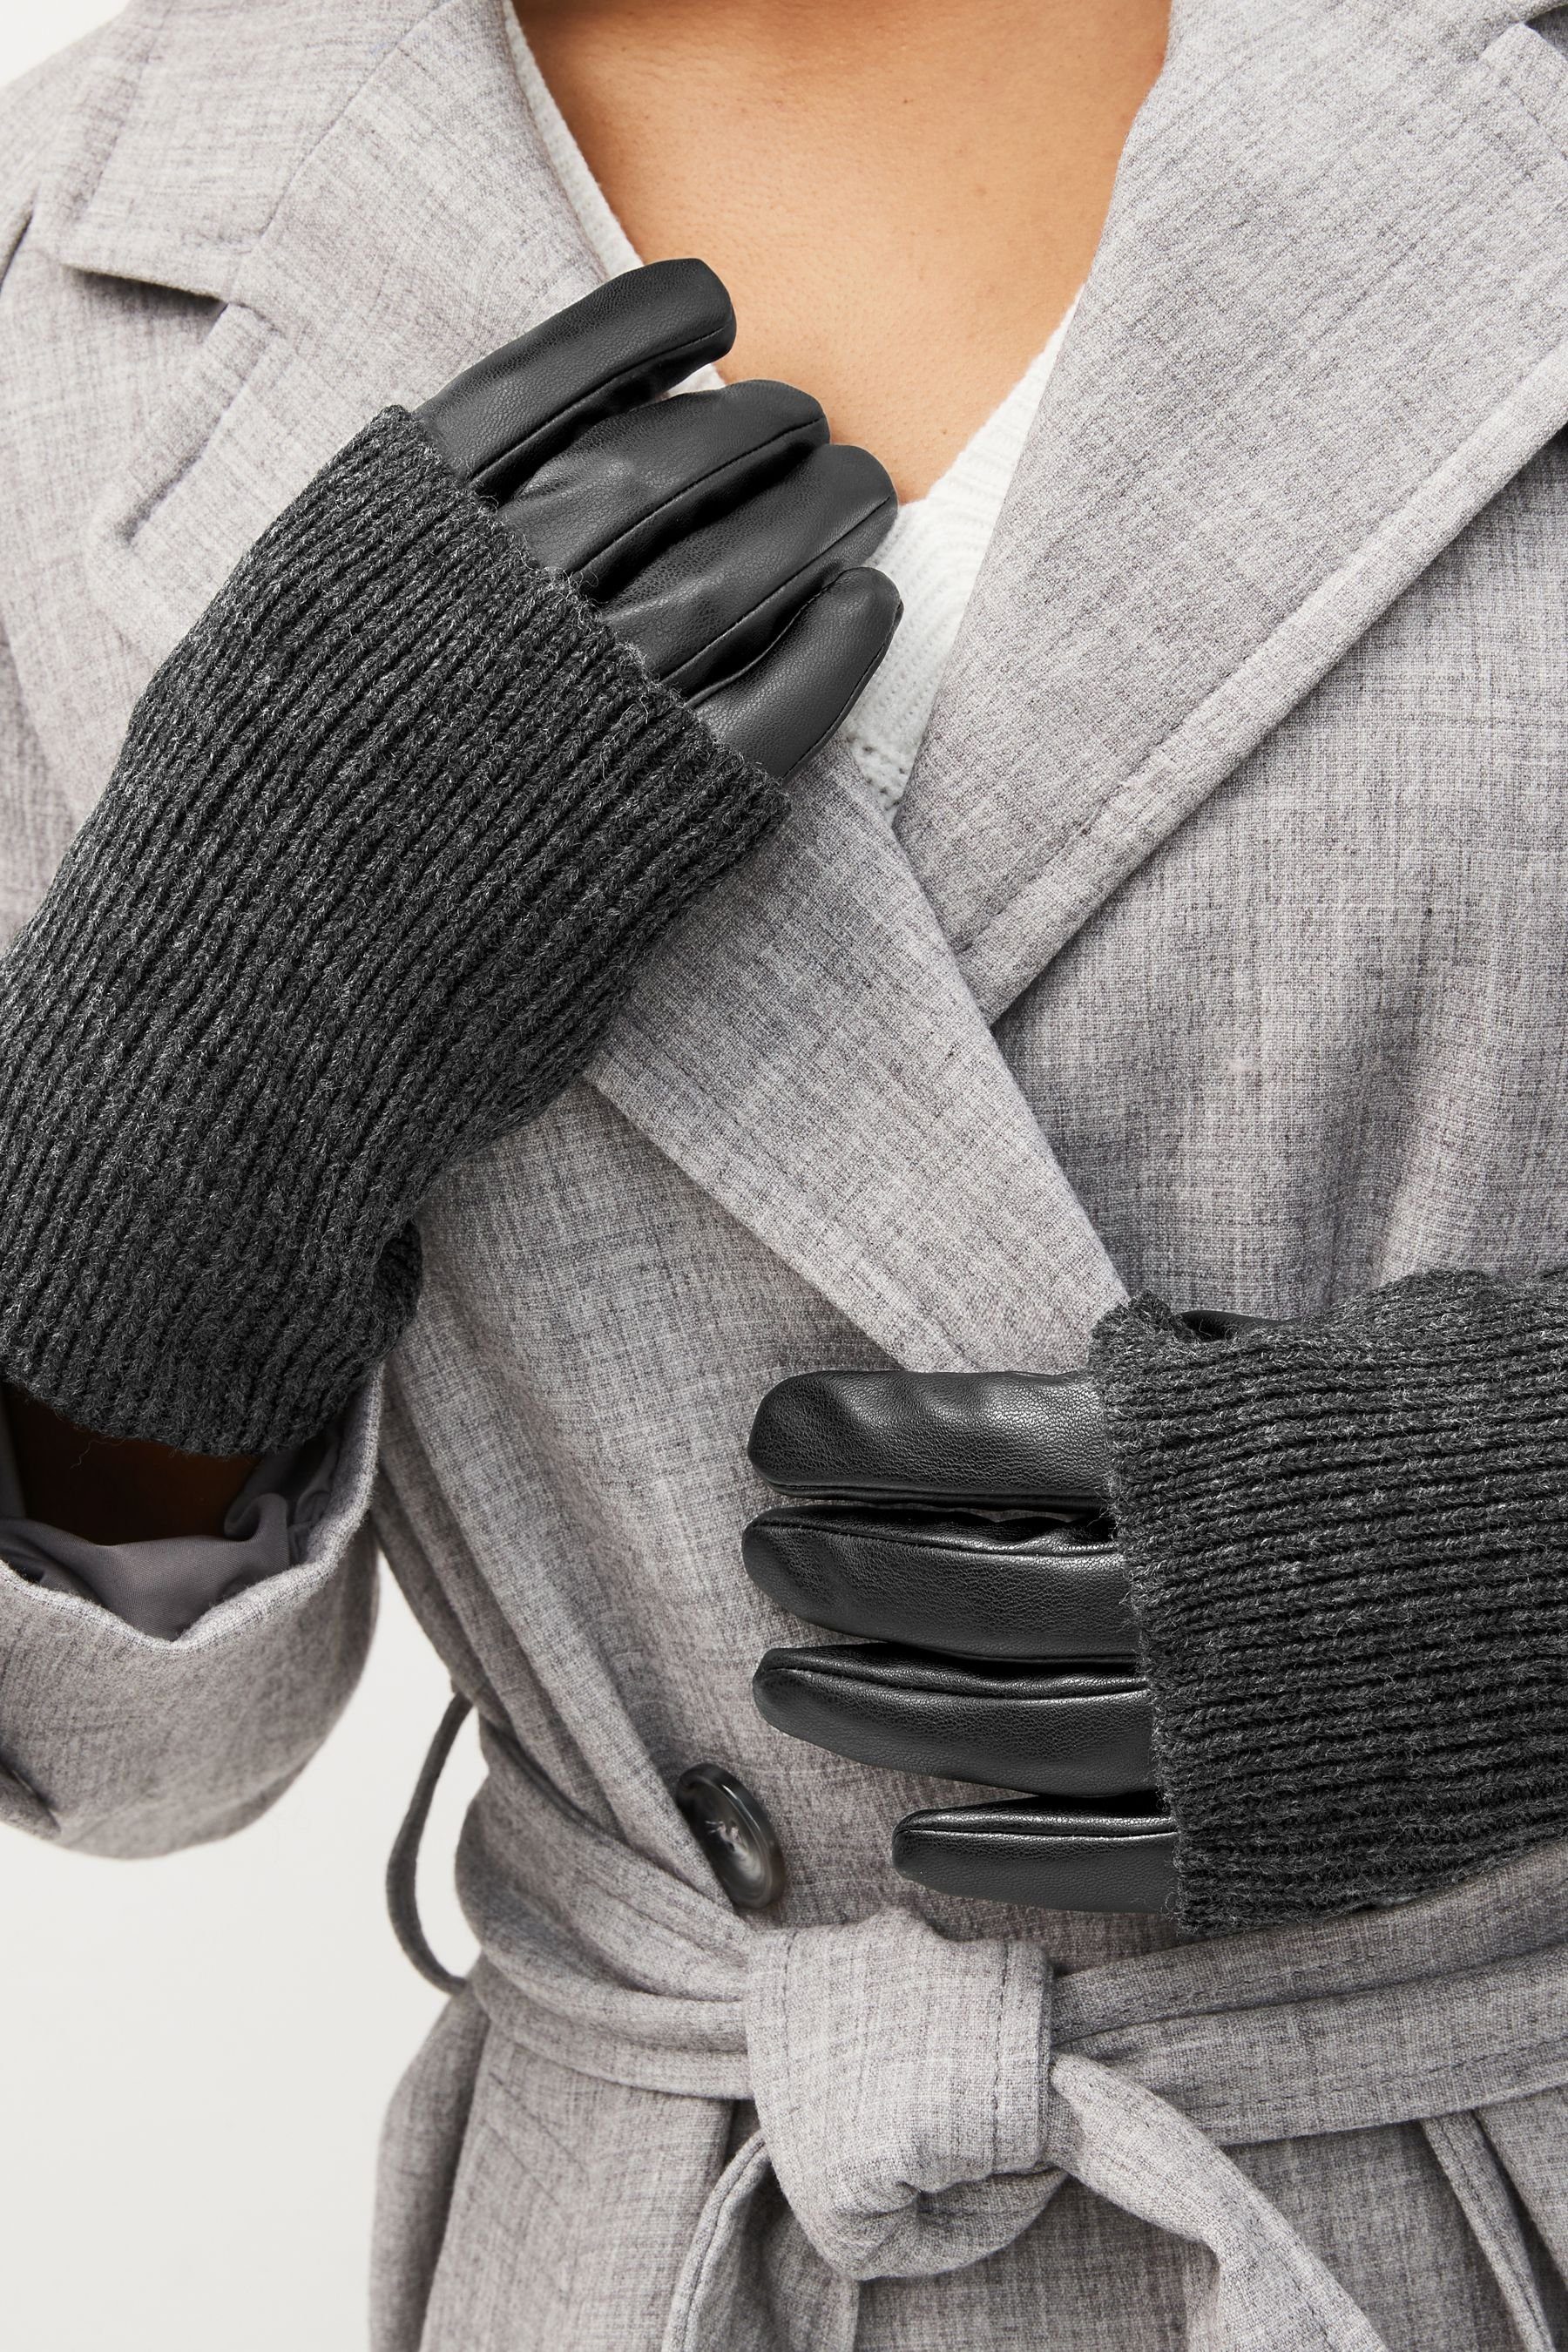 Handwärmer PU-Handschuh Next Strickhandschuhe